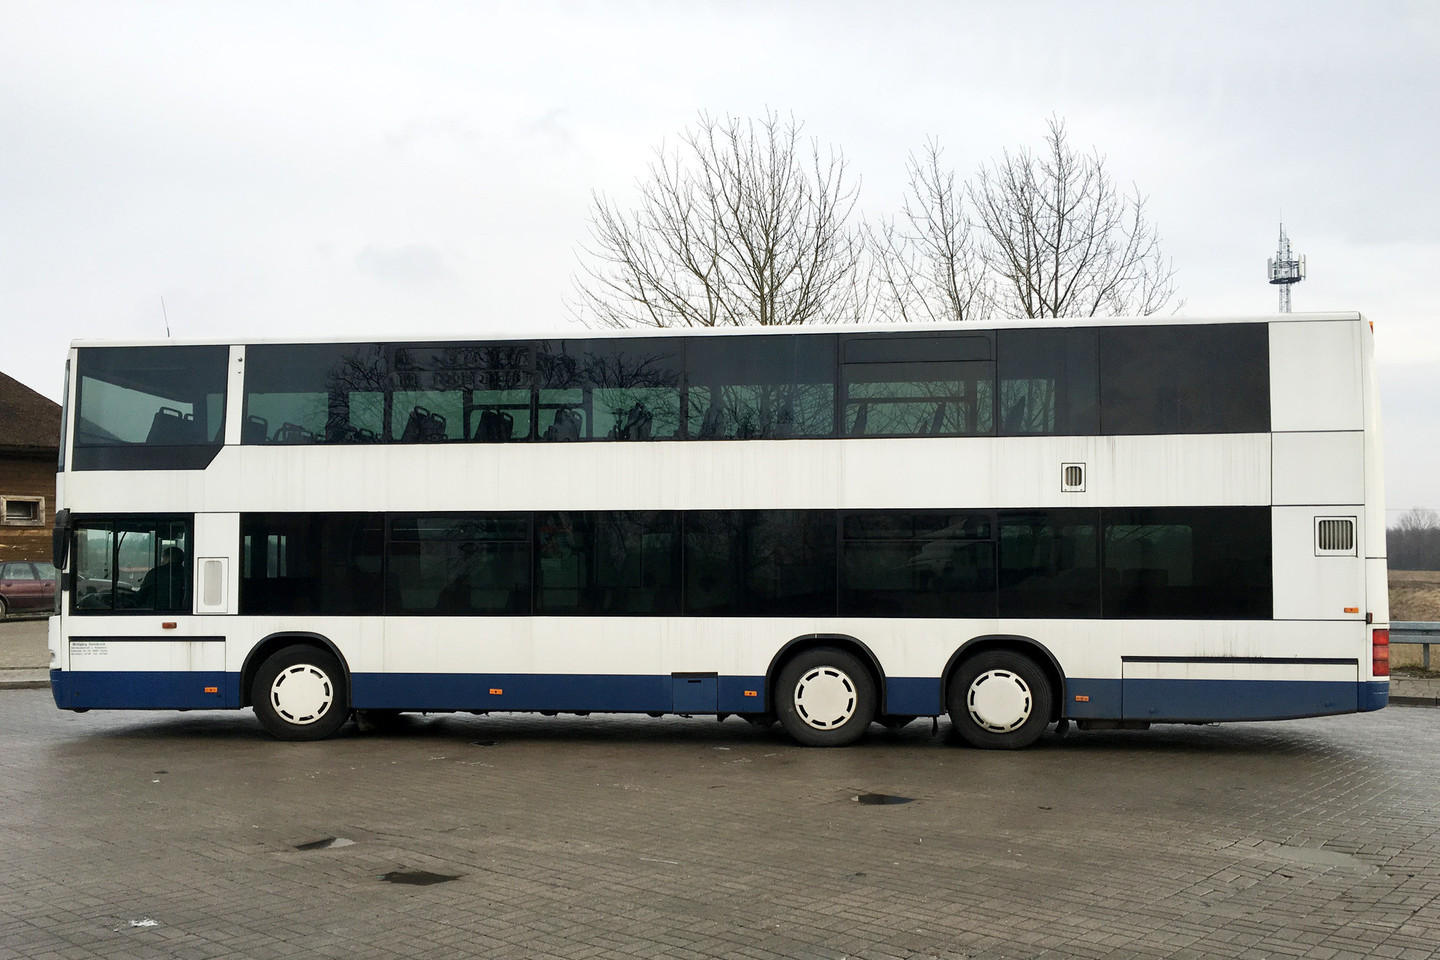 Į Šiaulius savo eiga atvažiavęs dviaukštis autobusas yra pagamintas 2000 metais. Jo vertė – apie 15 tūkstančių eurų.<br>UAB „Ridvija“ nuotr.